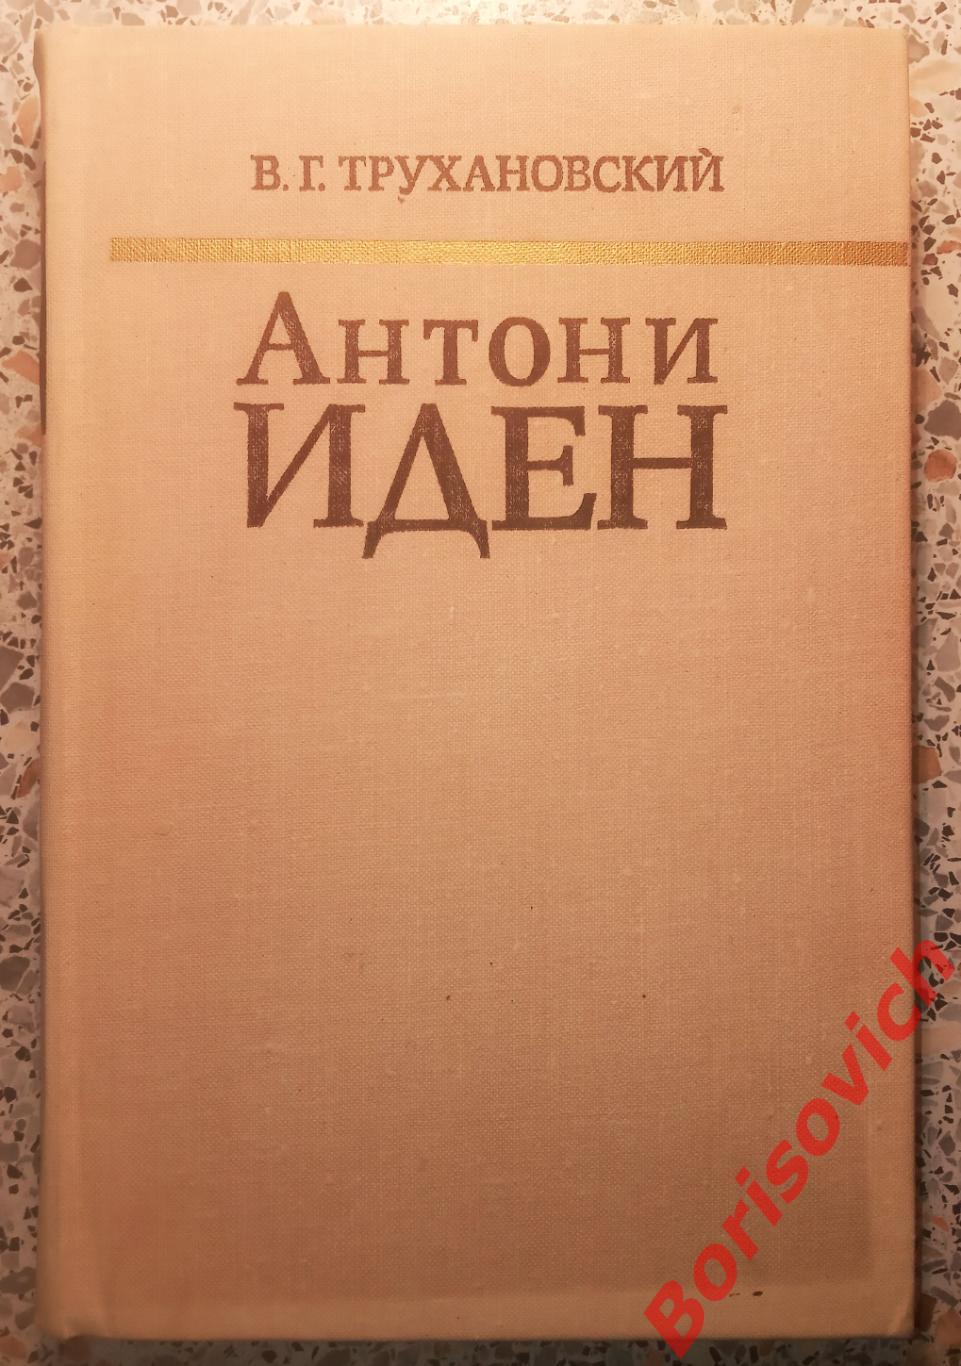 Антони Иден Страницы английской дипломатии 1976 г 424 стр